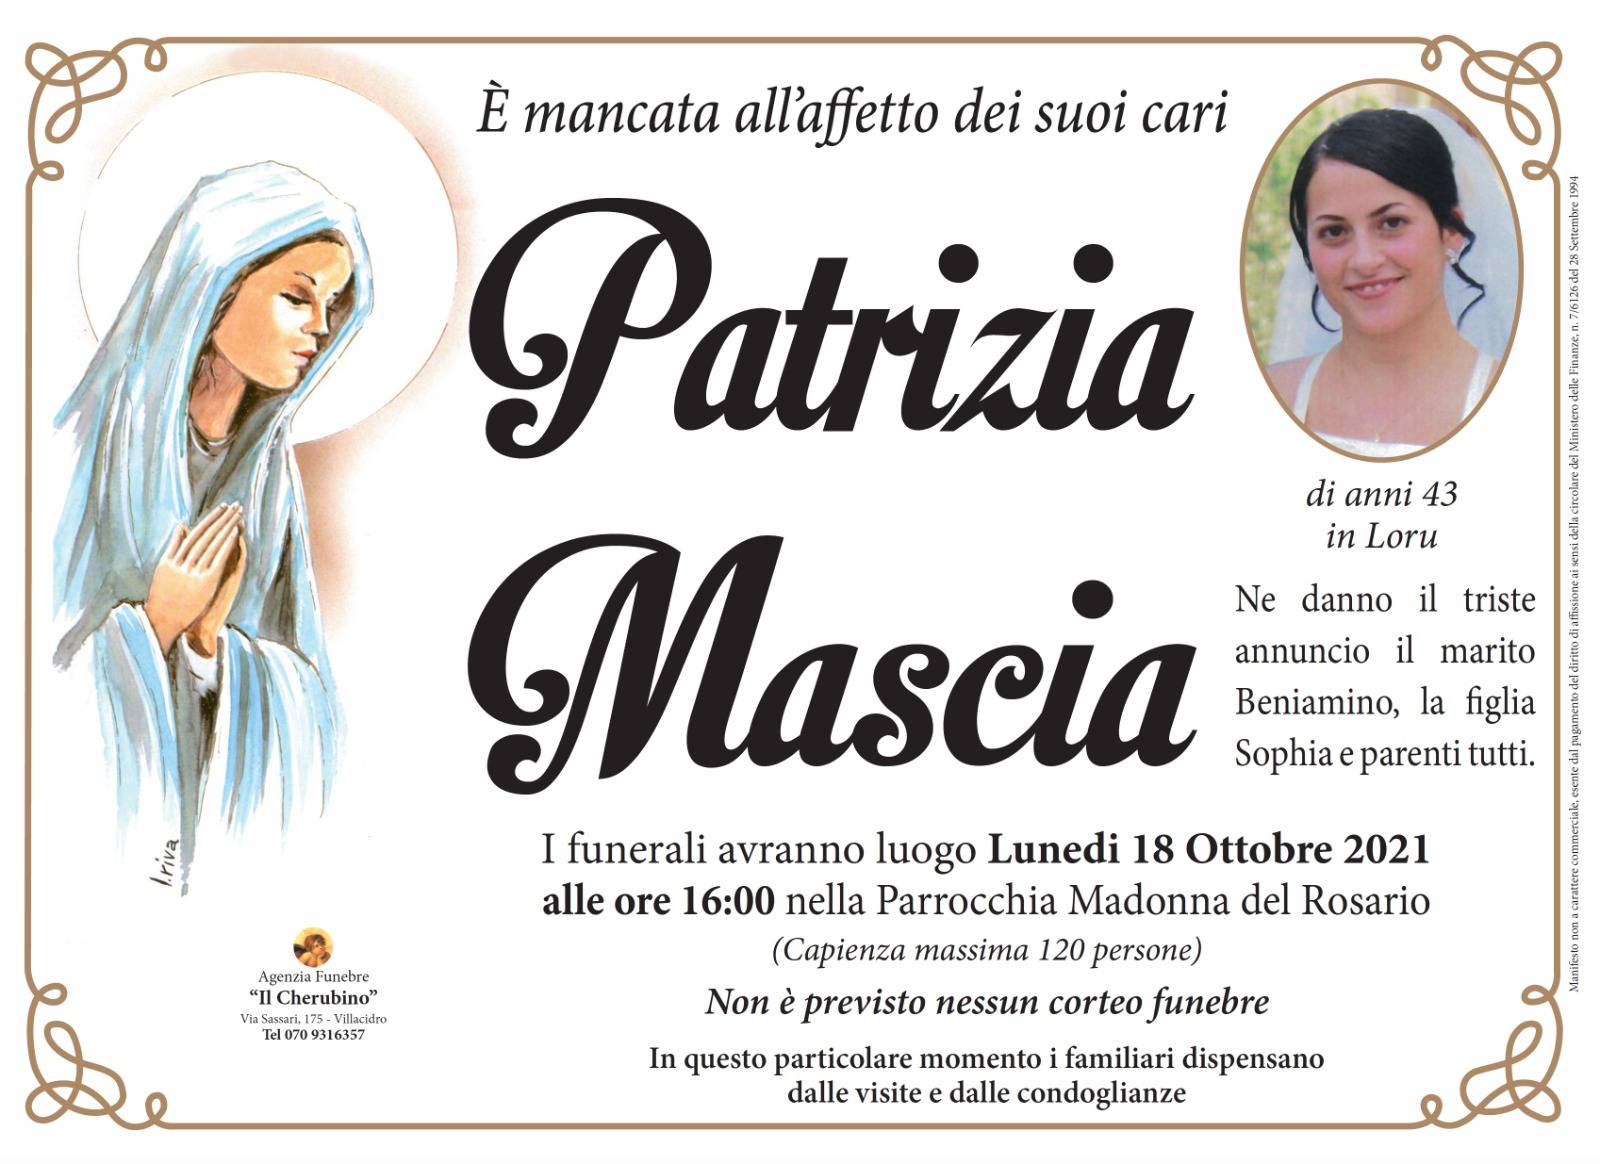 Patrizia Mascia